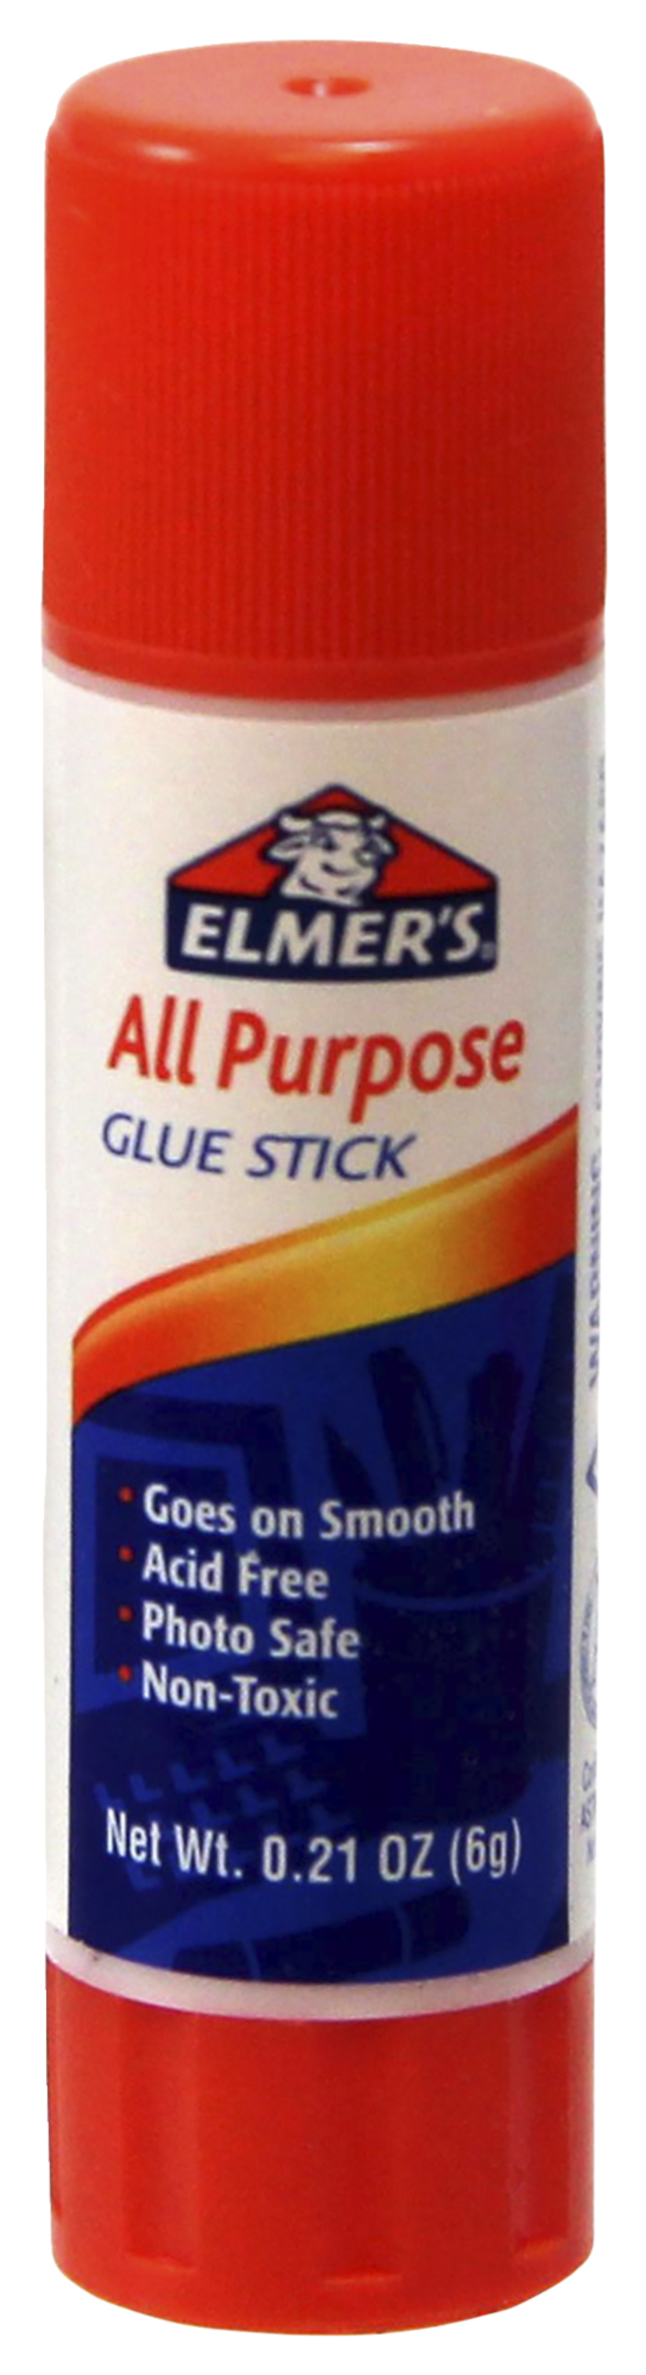 1InTheOffice Clear Glue Stick for Kids, Glue Sticks, All Purpose School  Glue Sticks, Washable Glue Sticks, Clear Stick Glue 0.28 oz, 36 Pack